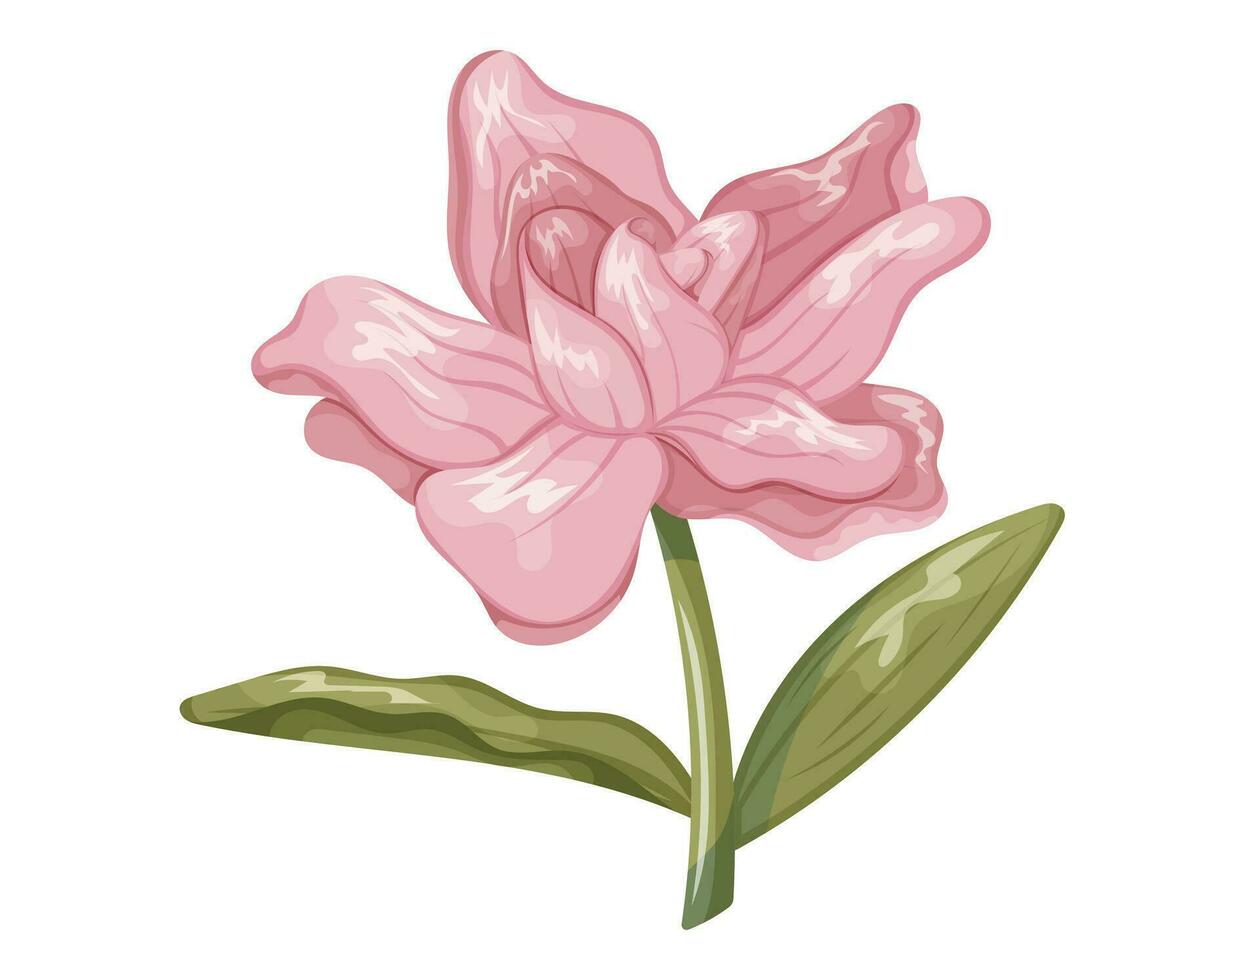 cartone animato bellissimo fioritura rosa rosa fiore. vettore isolato pianta, stelo con le foglie e germoglio con petali.